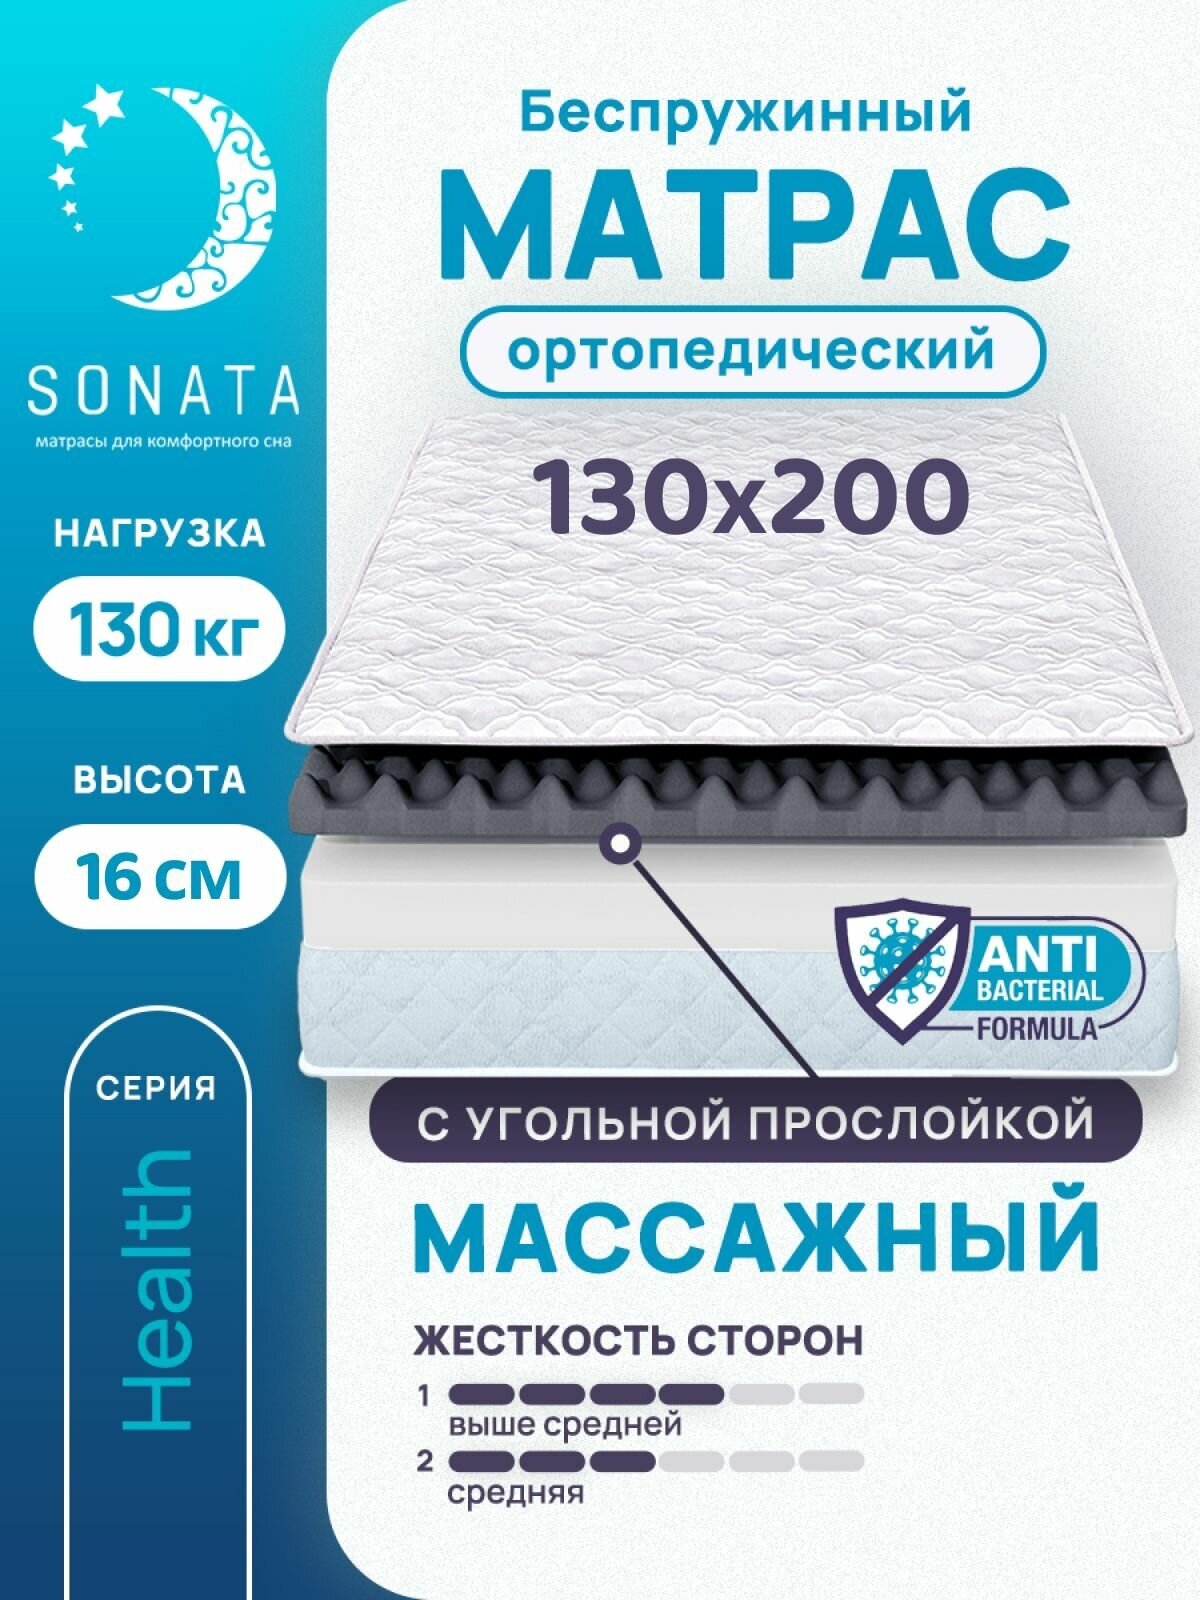 Матрас 130х200 см SONATA беспружинный односпальный матрац для кровати высота 16 см с массажным эффектом